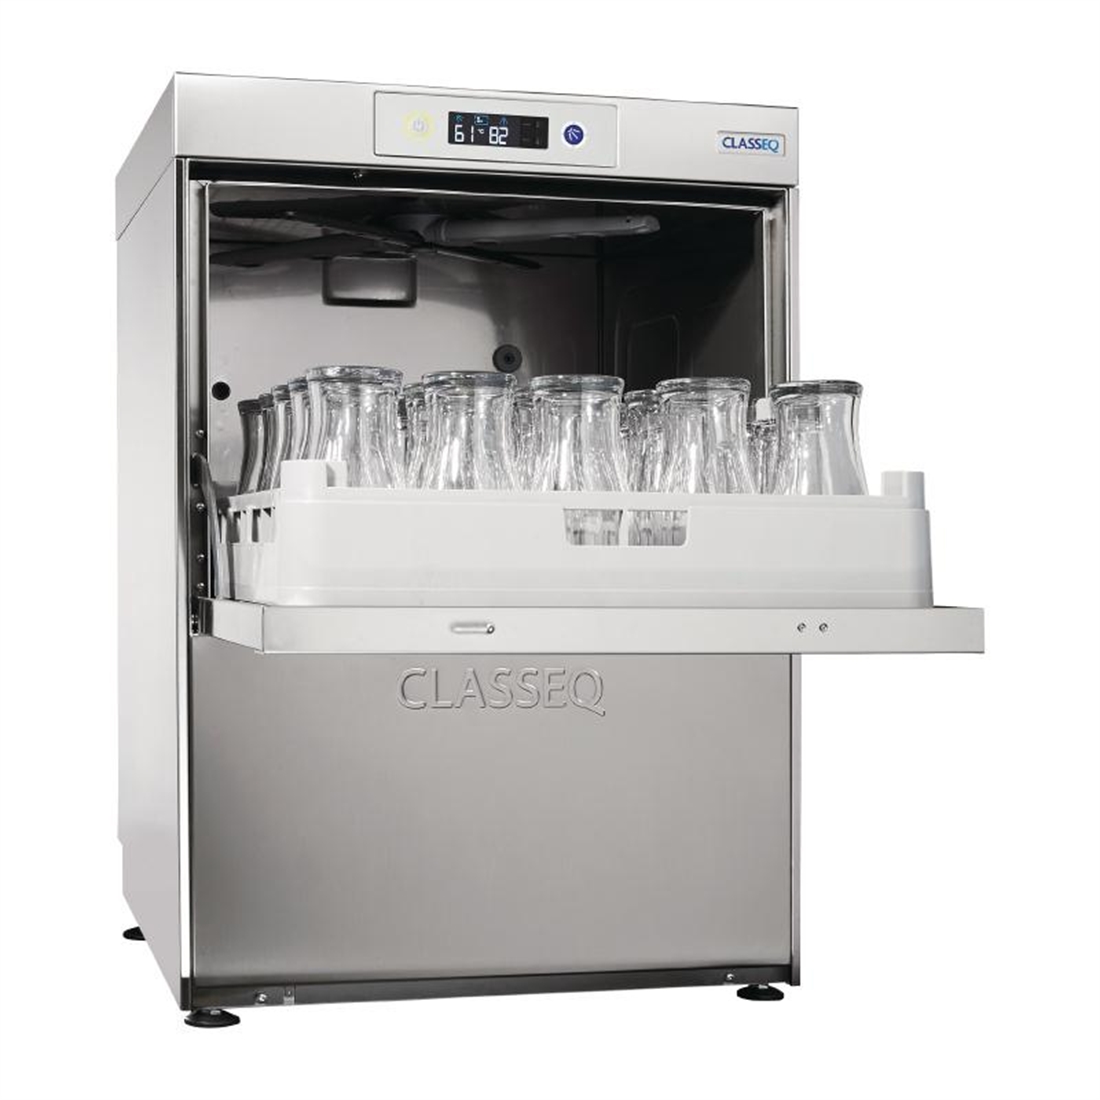 Classeq G500 Duo Glasswasher